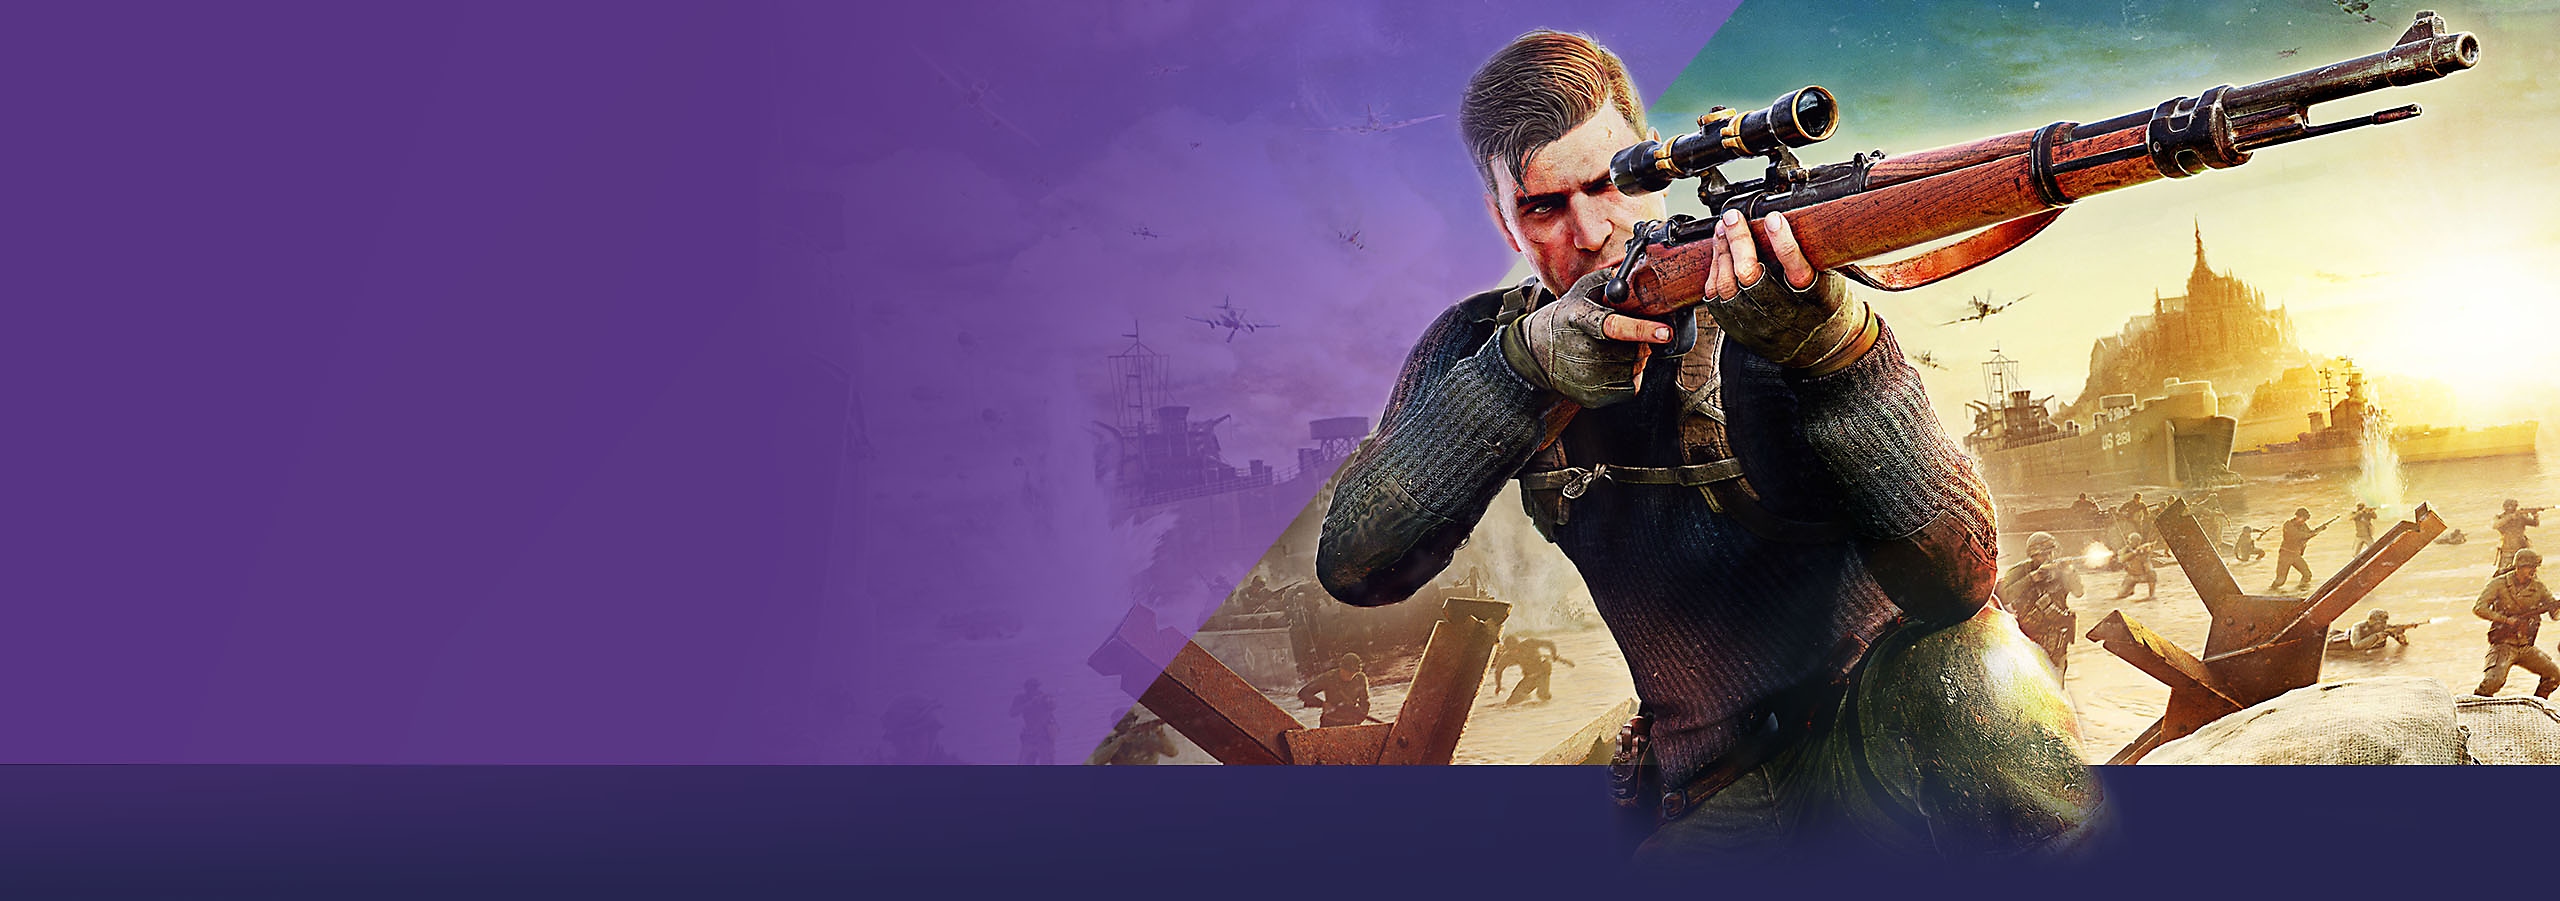 Tento měsíc na konzoli PlayStation – obrázek hrdiny s klíčovou grafikou ze hry Sniper Elite 5